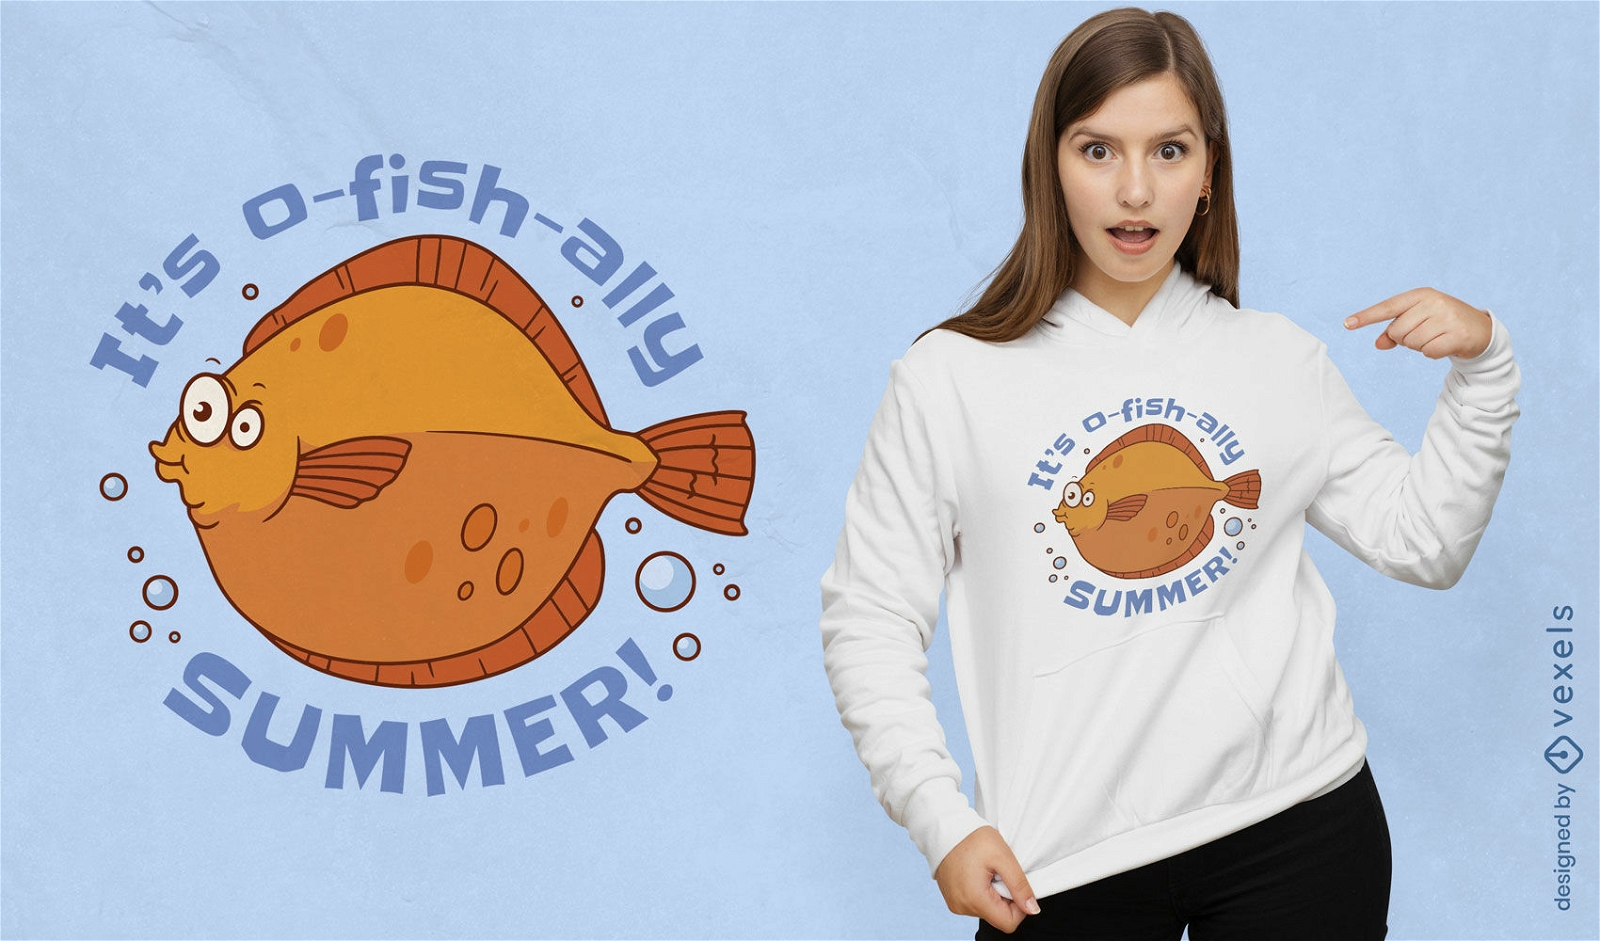 Dise?o de camiseta de juego de palabras de pescado de verano.